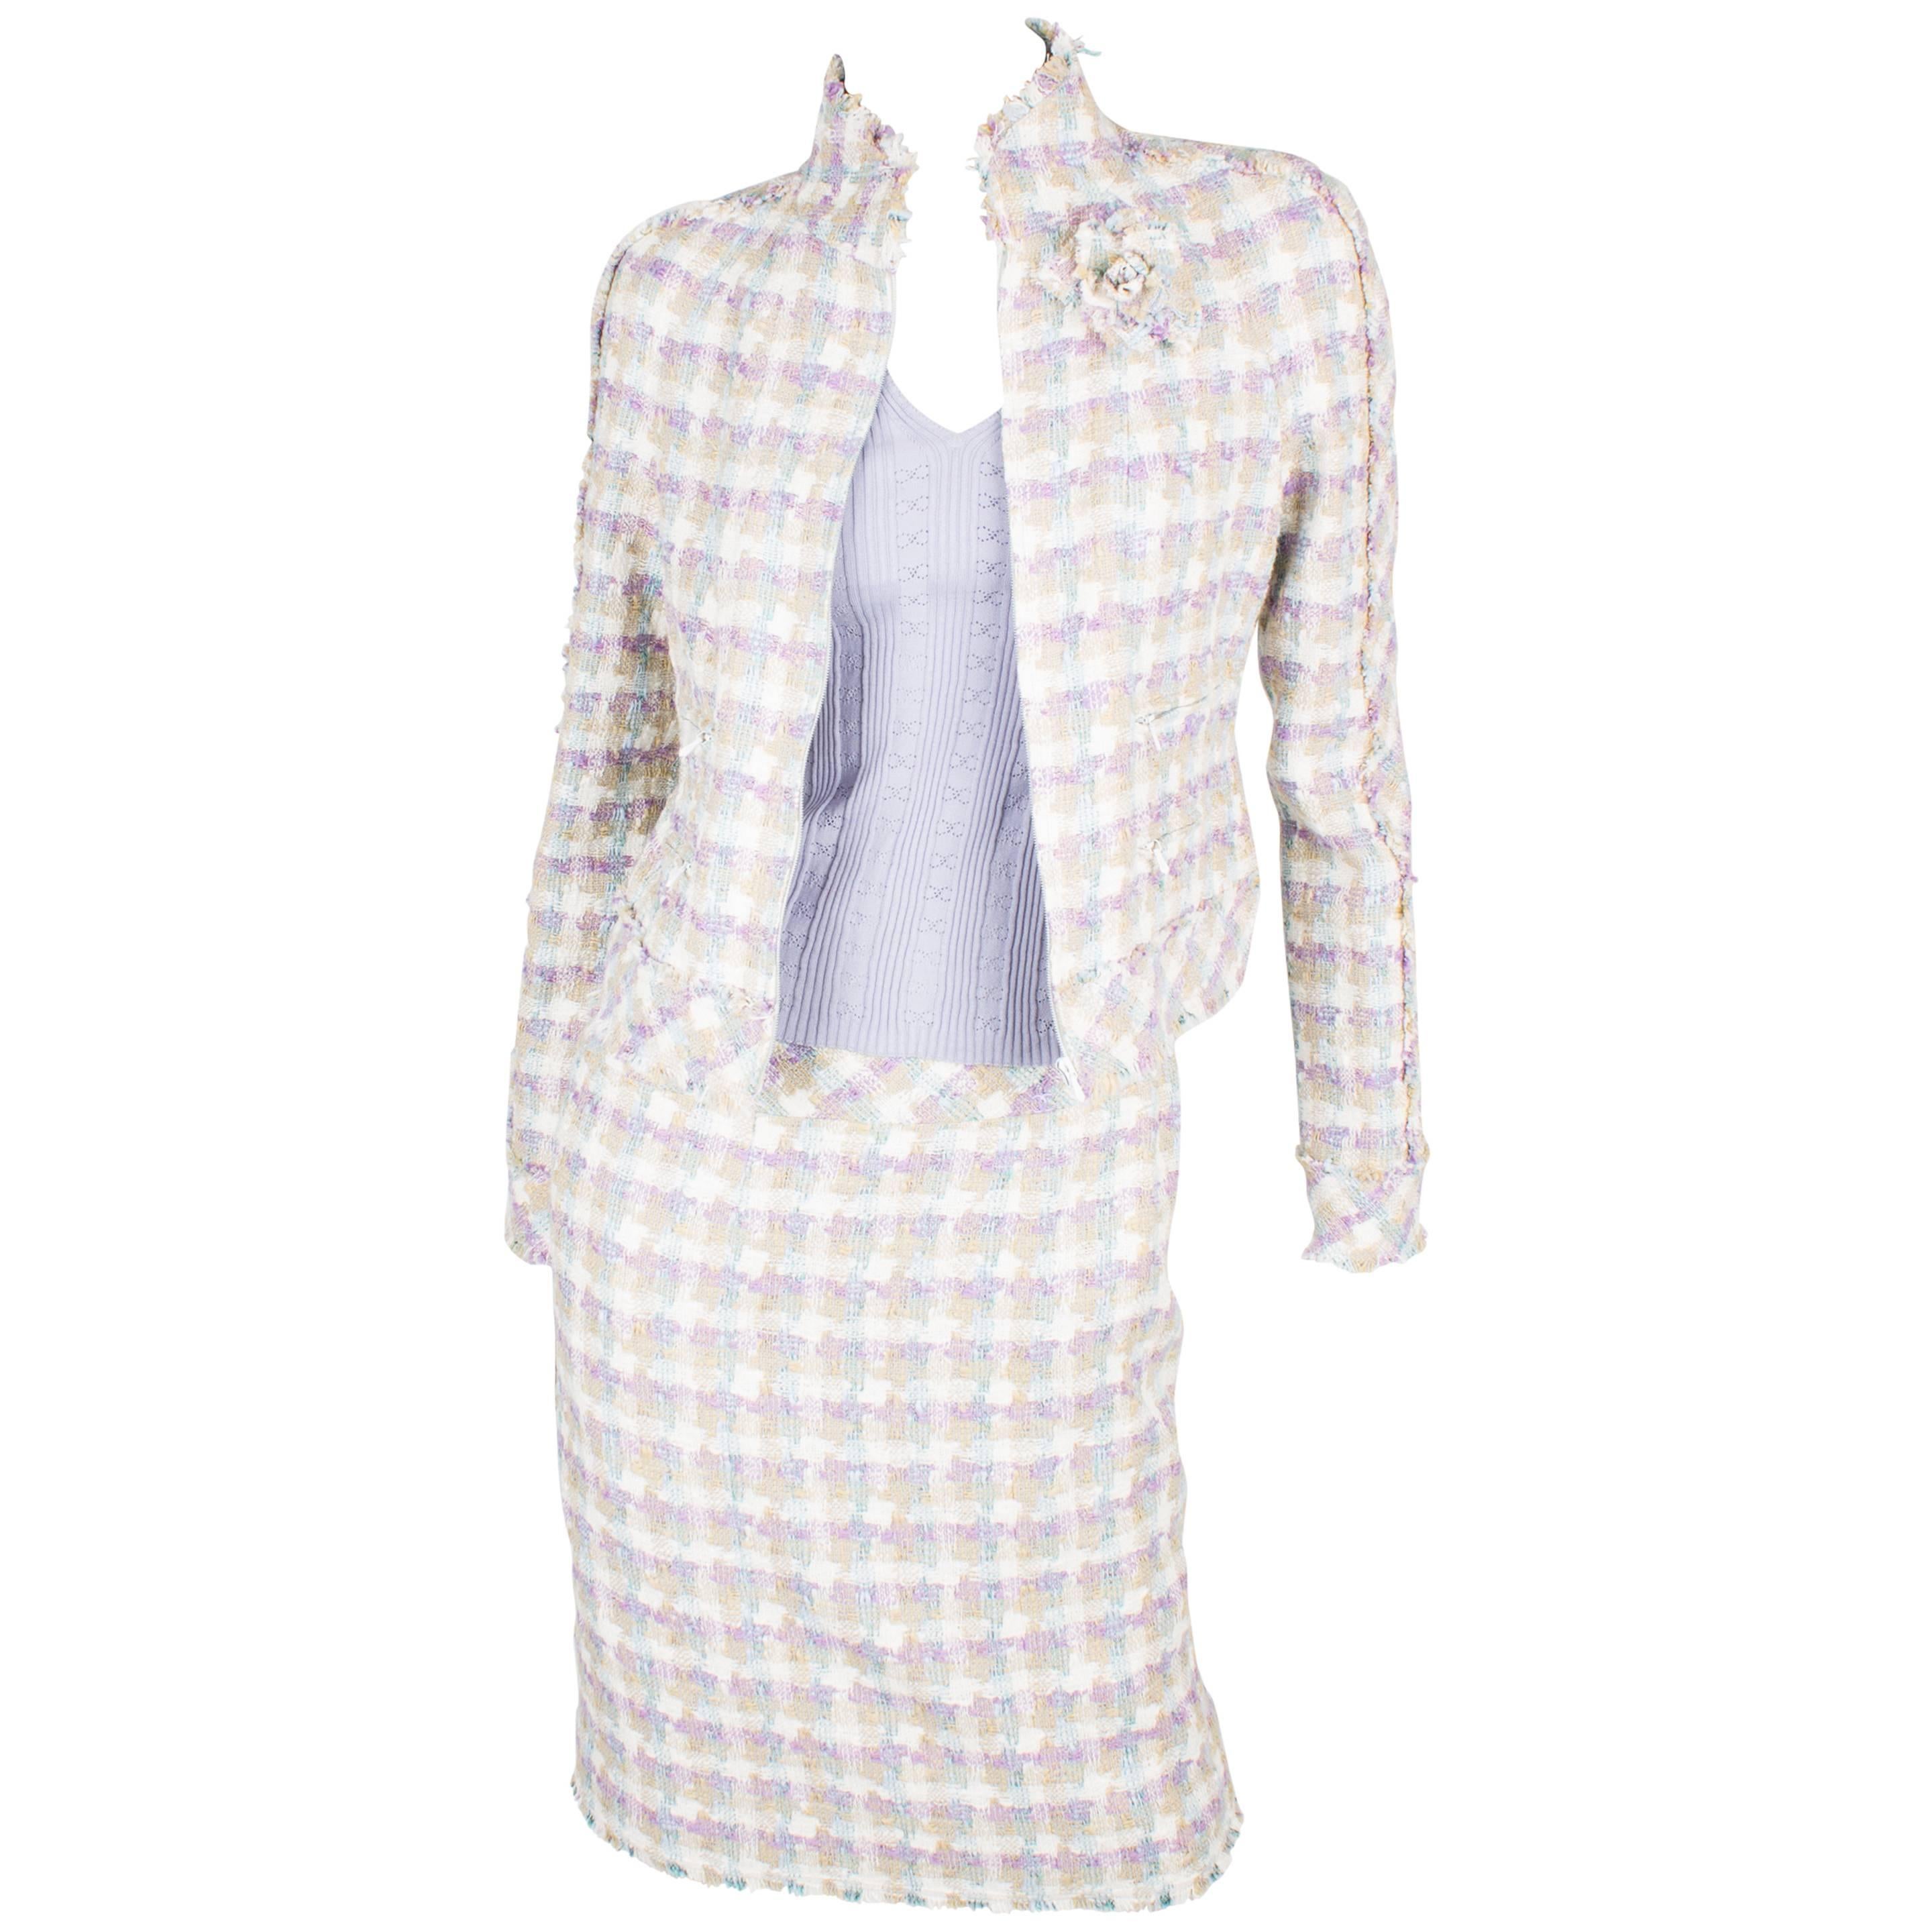 Chanel 4-pcs Suit Jacket, Skirt, Pants & Top - lilac/beige/blue/white 2005 For Sale